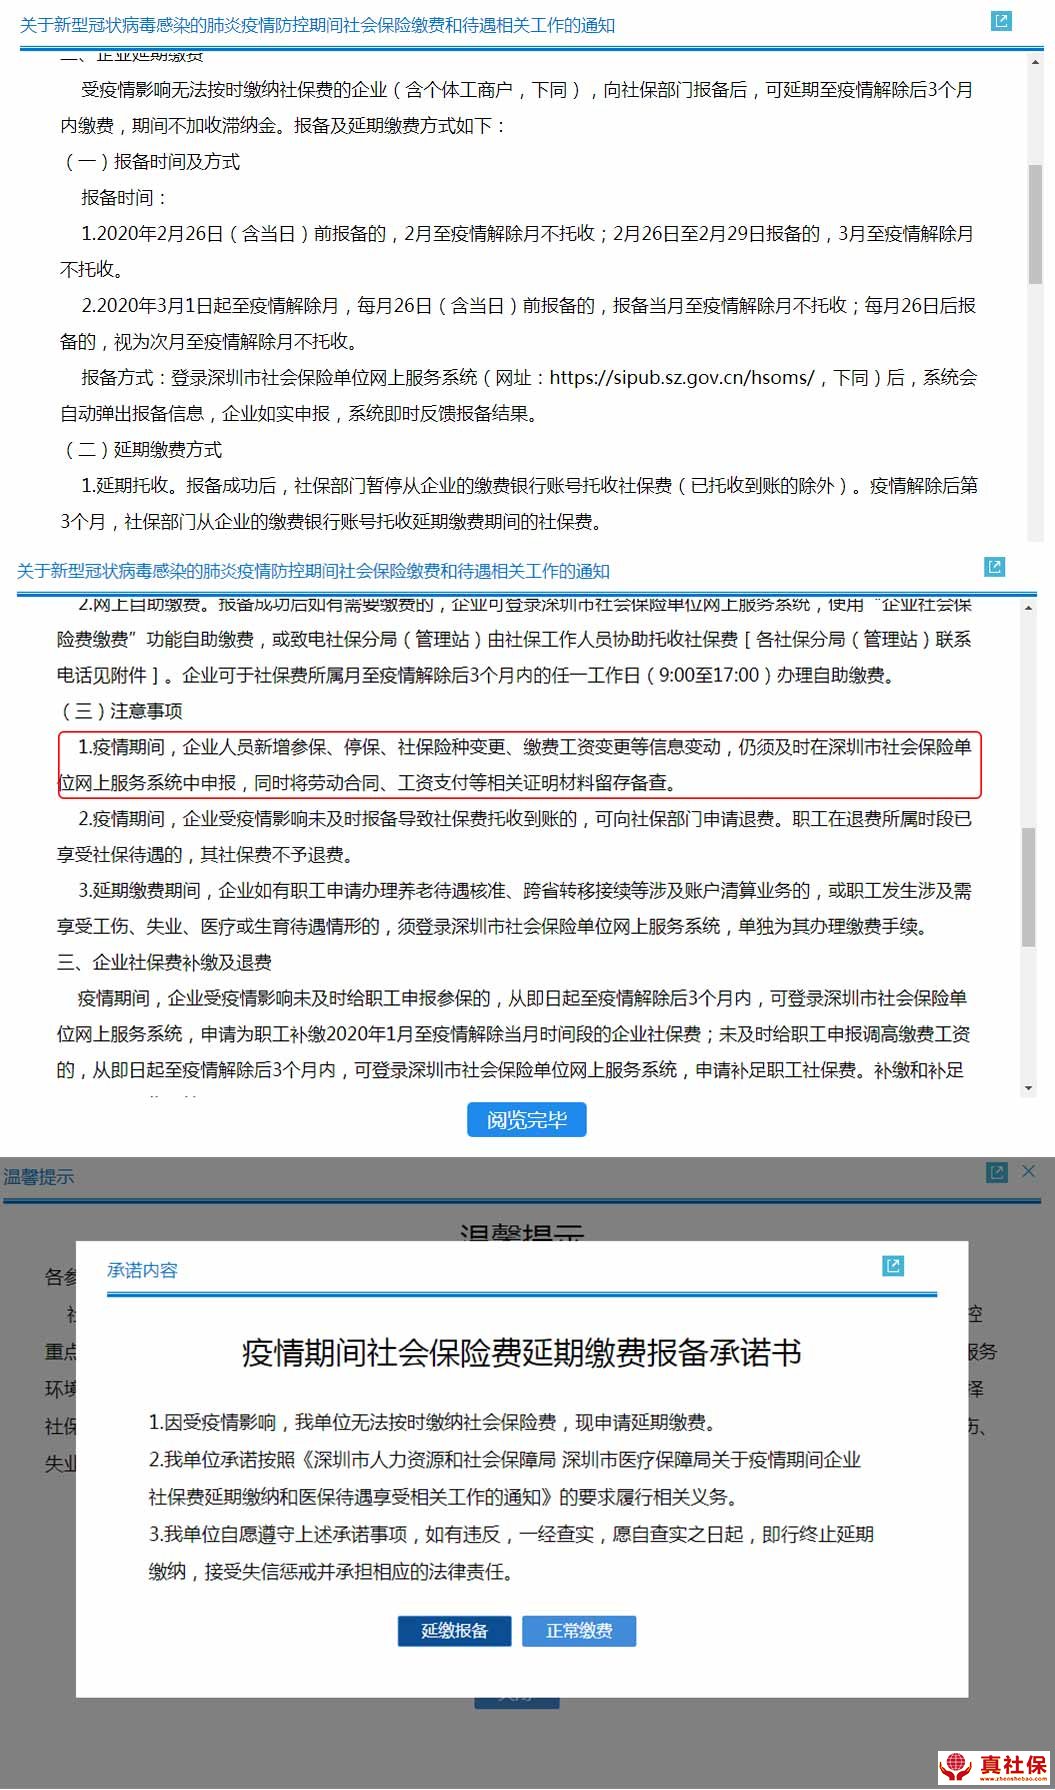 深圳社保局关于2月份社保扣费与减免通知